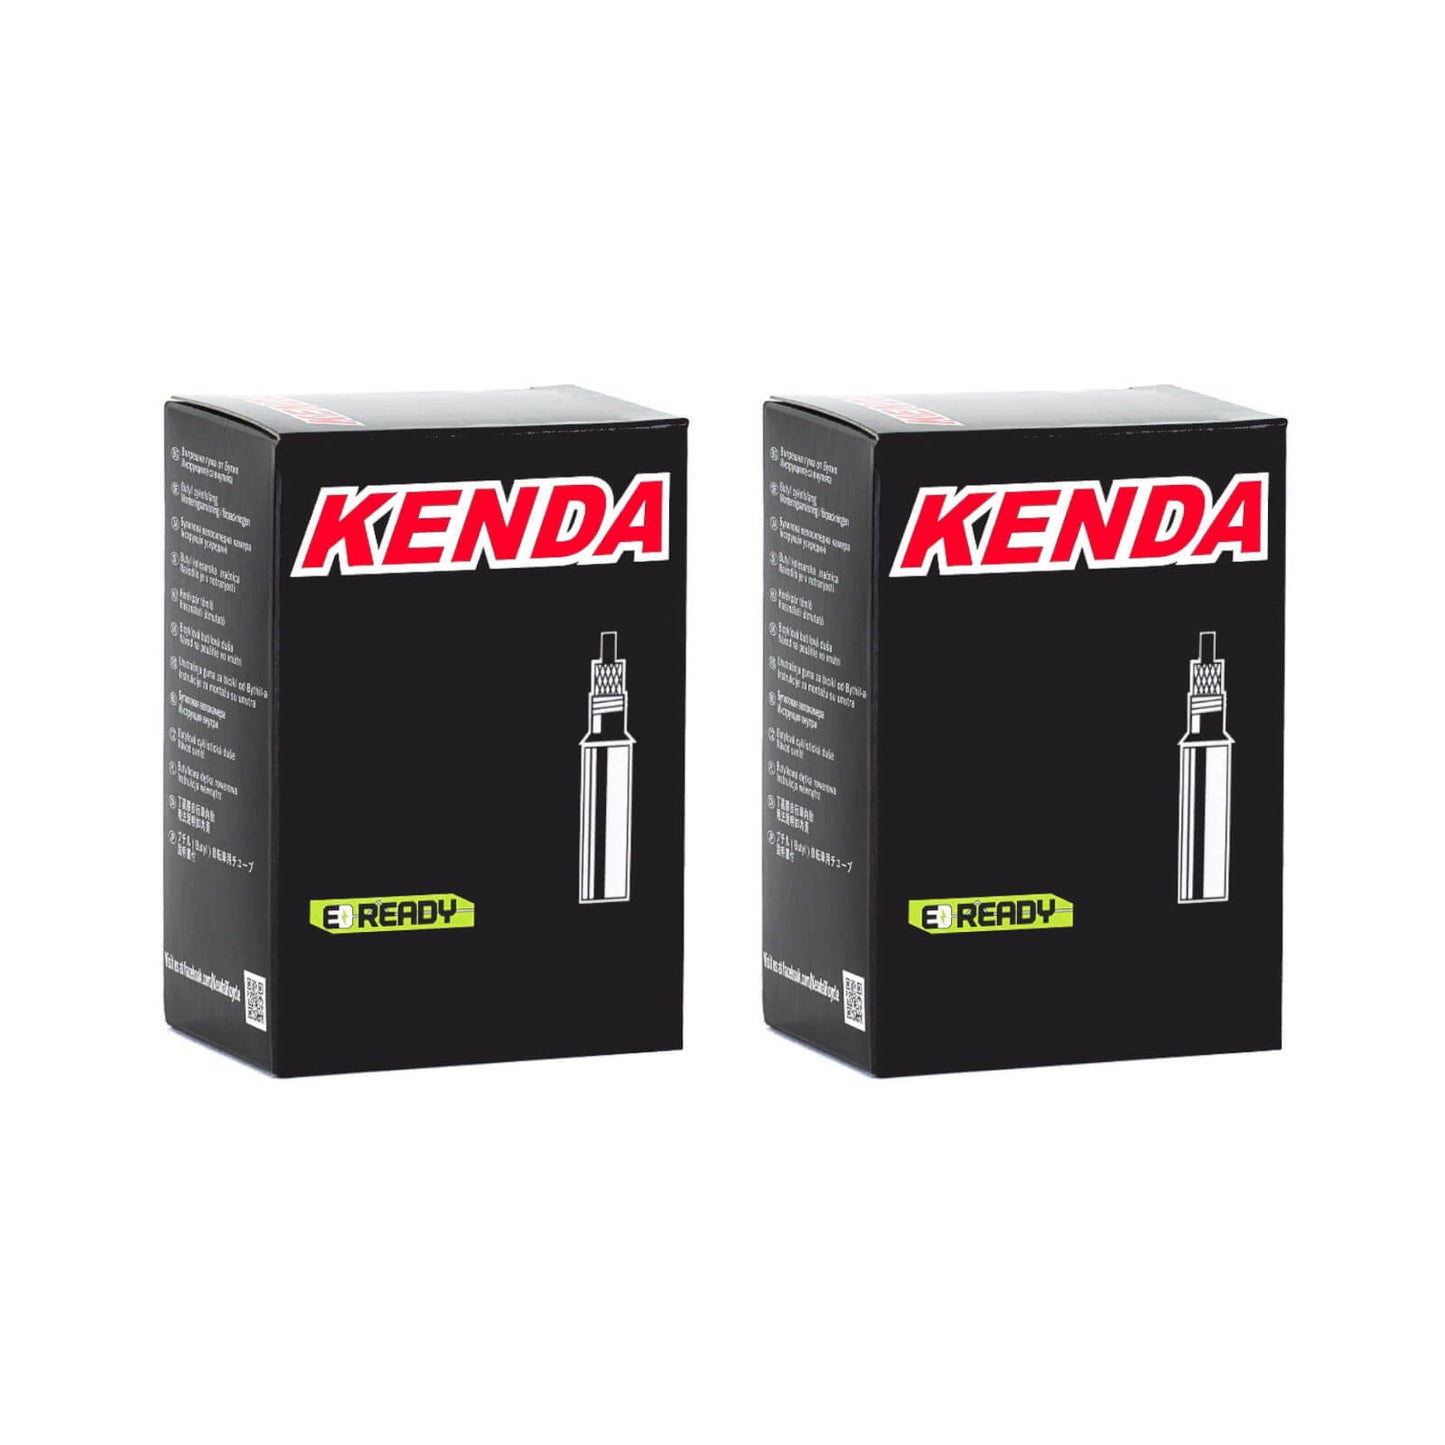 Kenda 700x45-50c 700c Presta Valve Bike Inner Tube Pack of 2